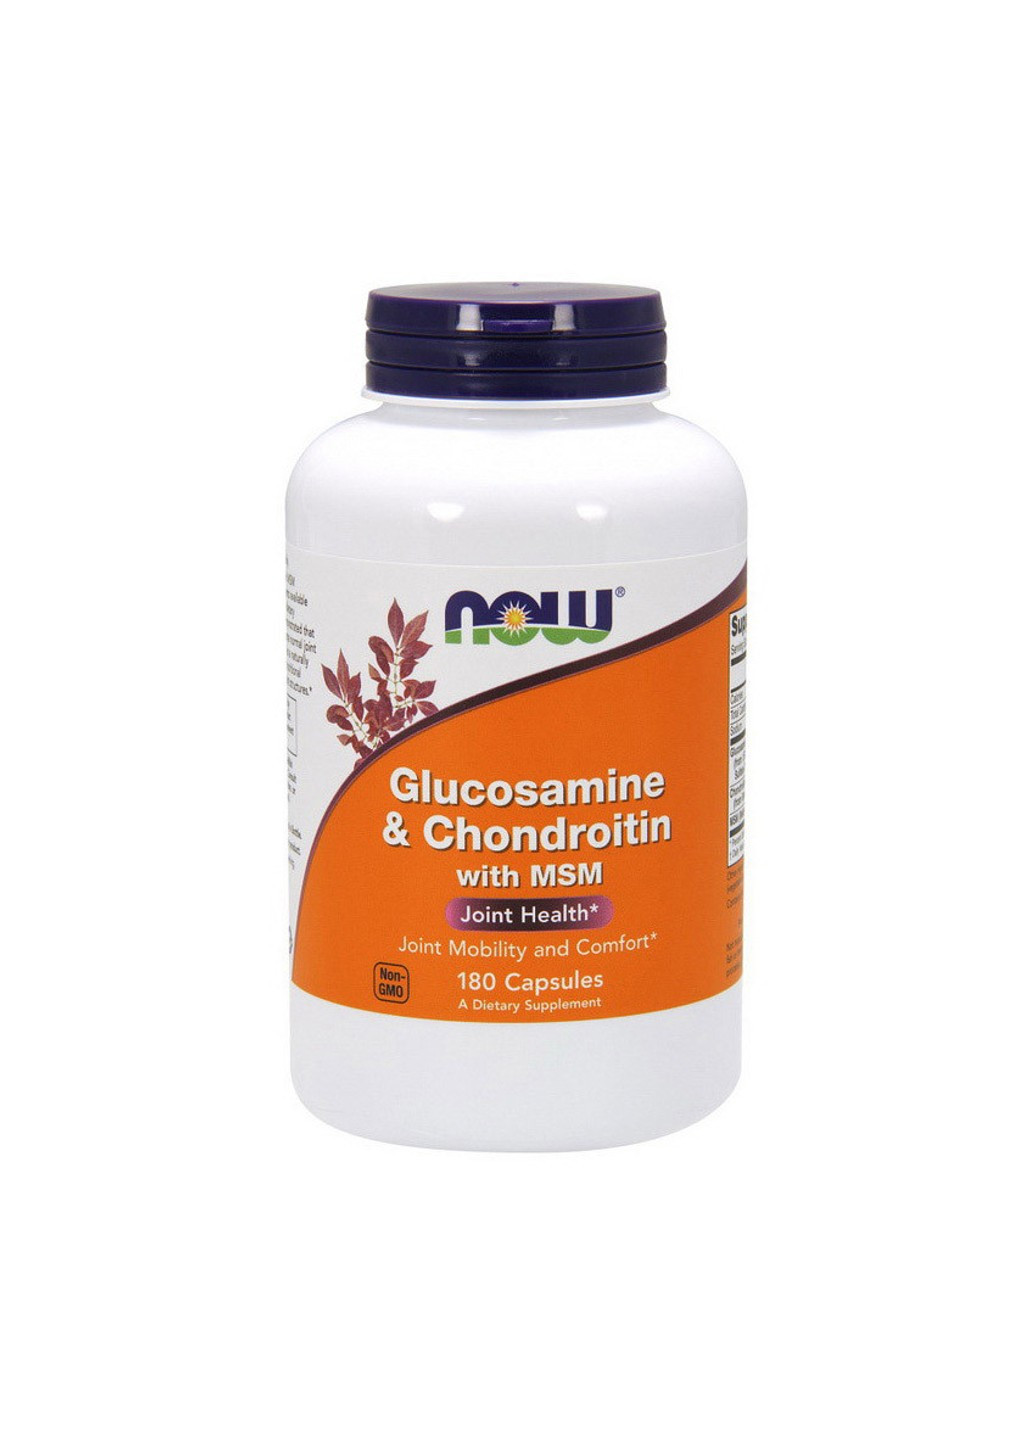 Глюкозамин хондроитин МСМ Glucosamine & Chondroitin with MSM (180 капс) нау фудс Now Foods (255407678)